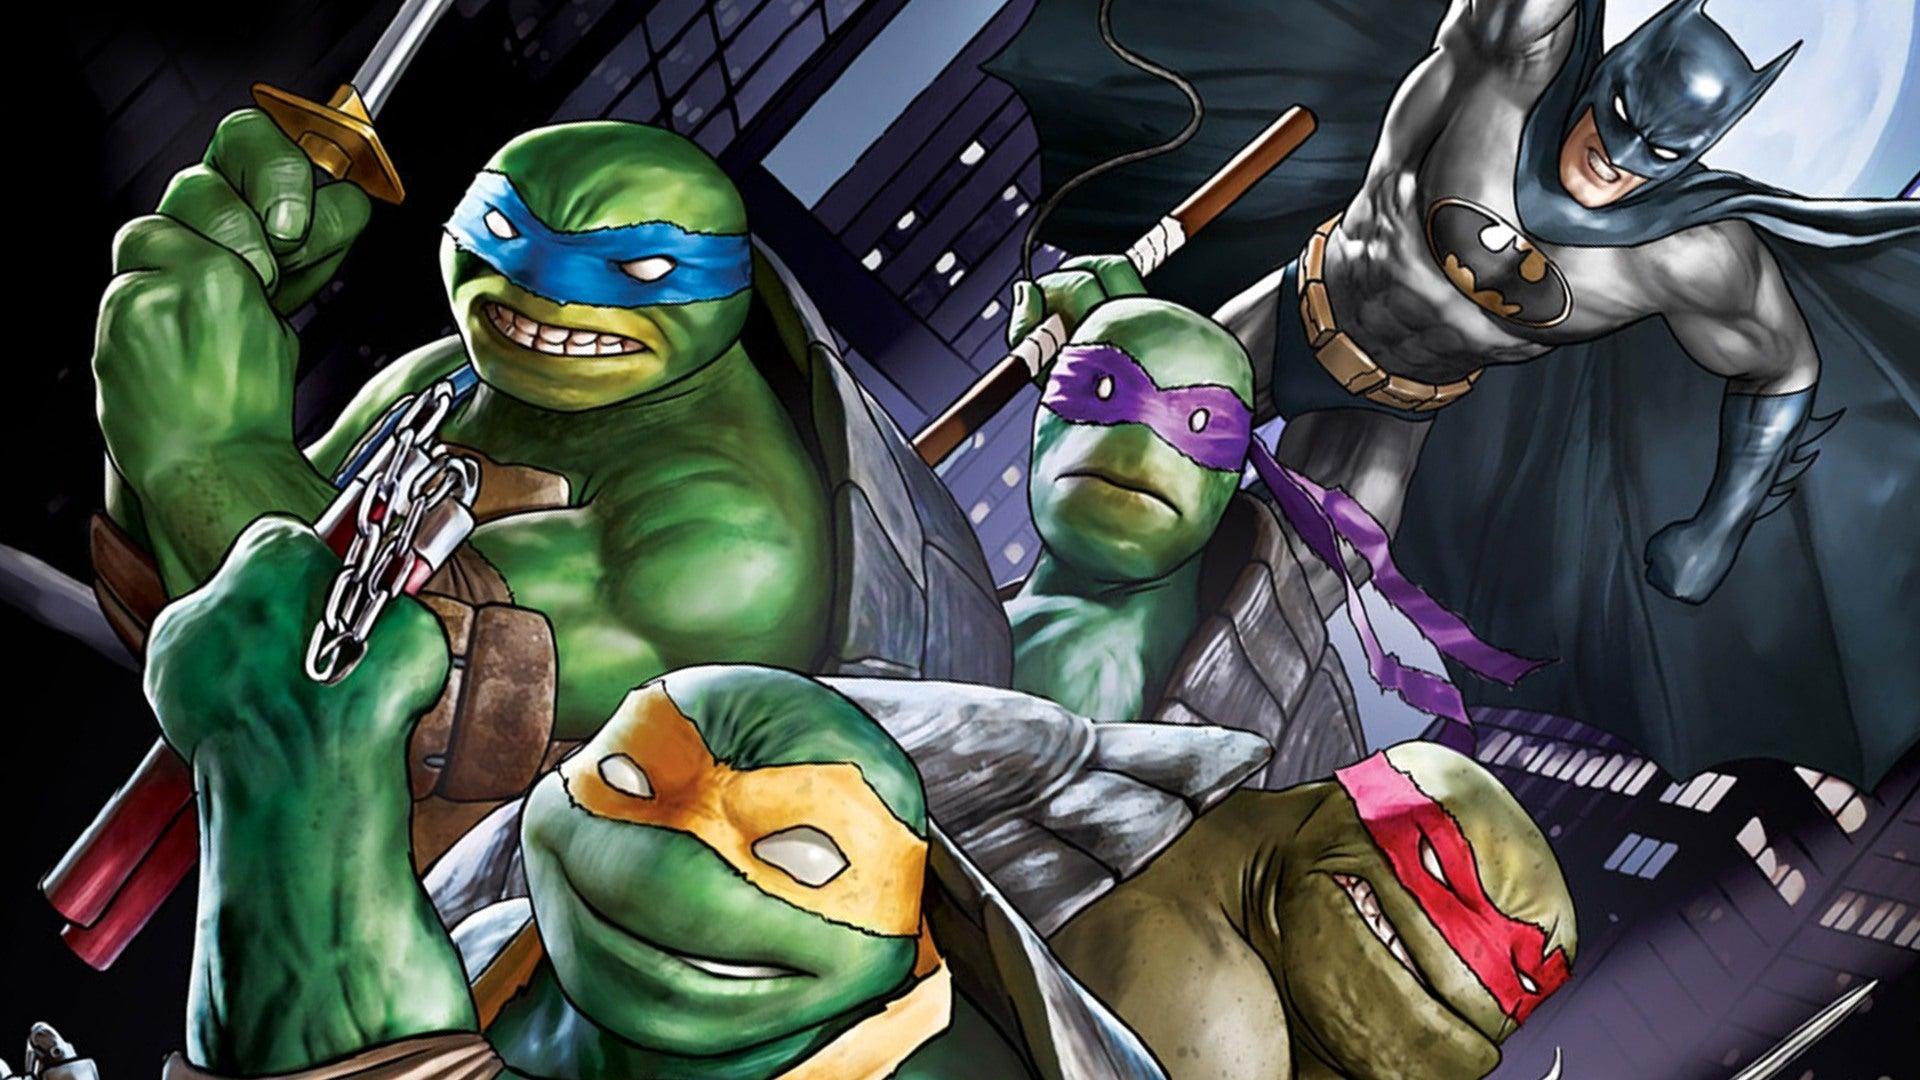 batman-vs-teenage-mutant-ninja-turtles-movie.jpg